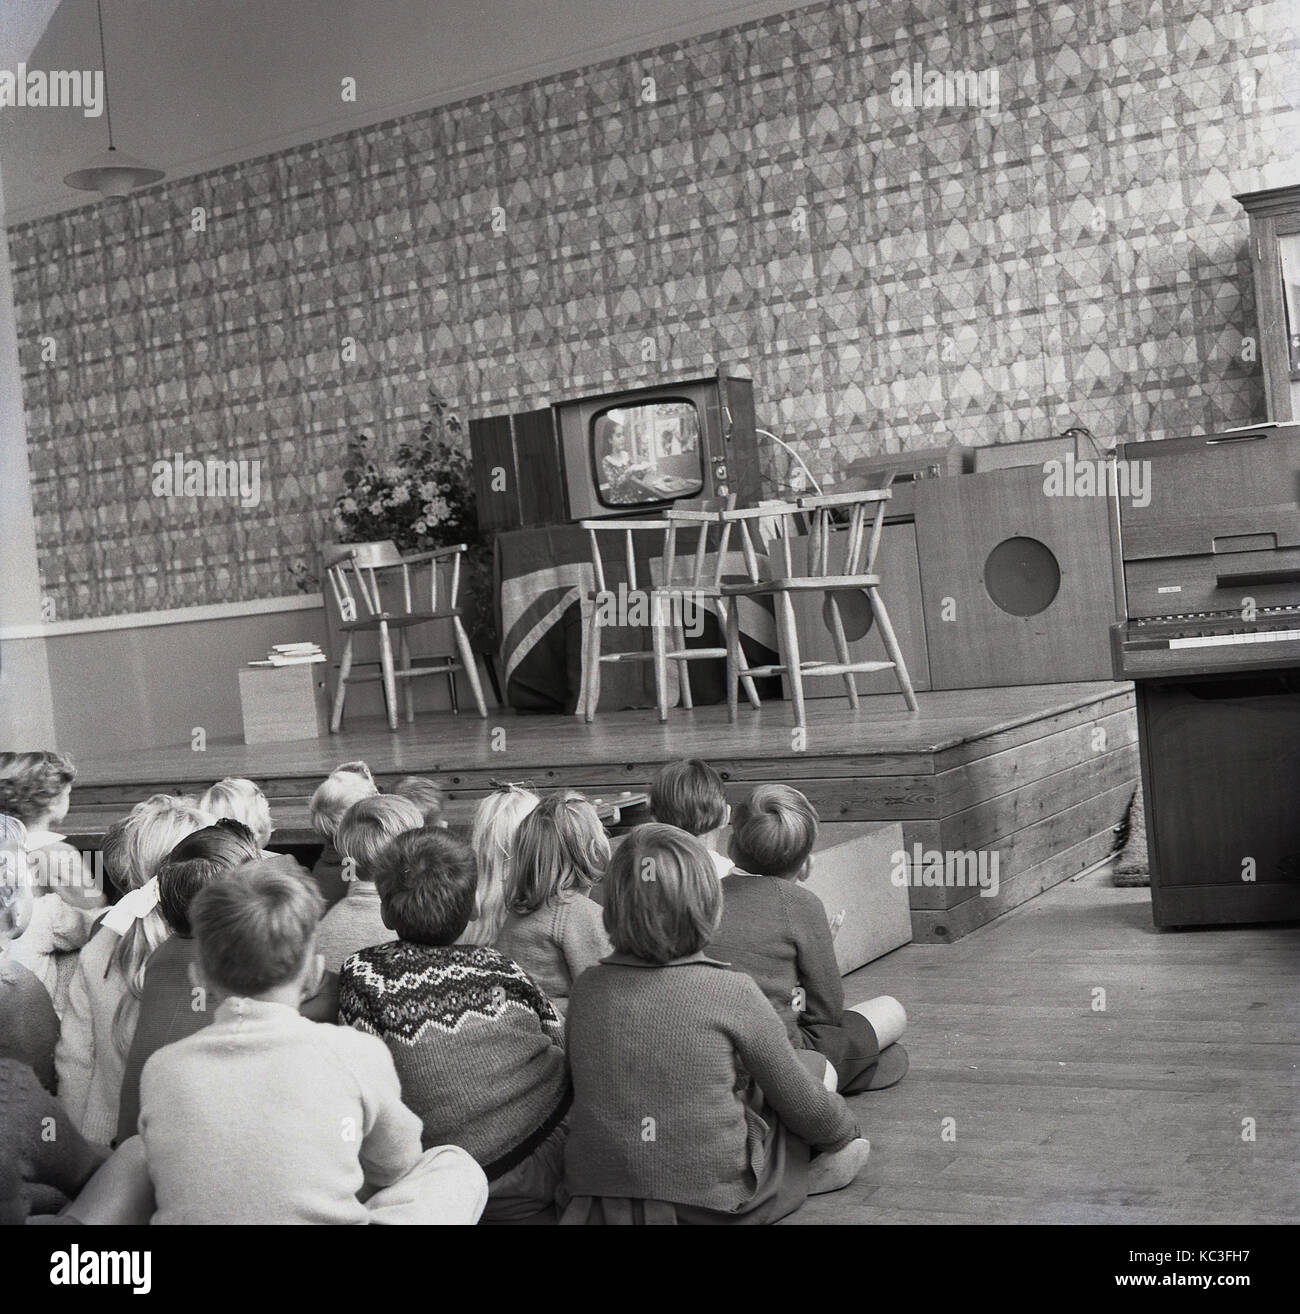 1964, storico gruppo di bambini della scuola primaria si siedono a guardare un programma per bambini su un nuovo televisore. È stato in questo momento che la programmazione per i bambini era prima radiodiffusione nel Regno Unito e le emittenti regalato nuovi televisori per incoraggiare la visualizzazione. Foto Stock